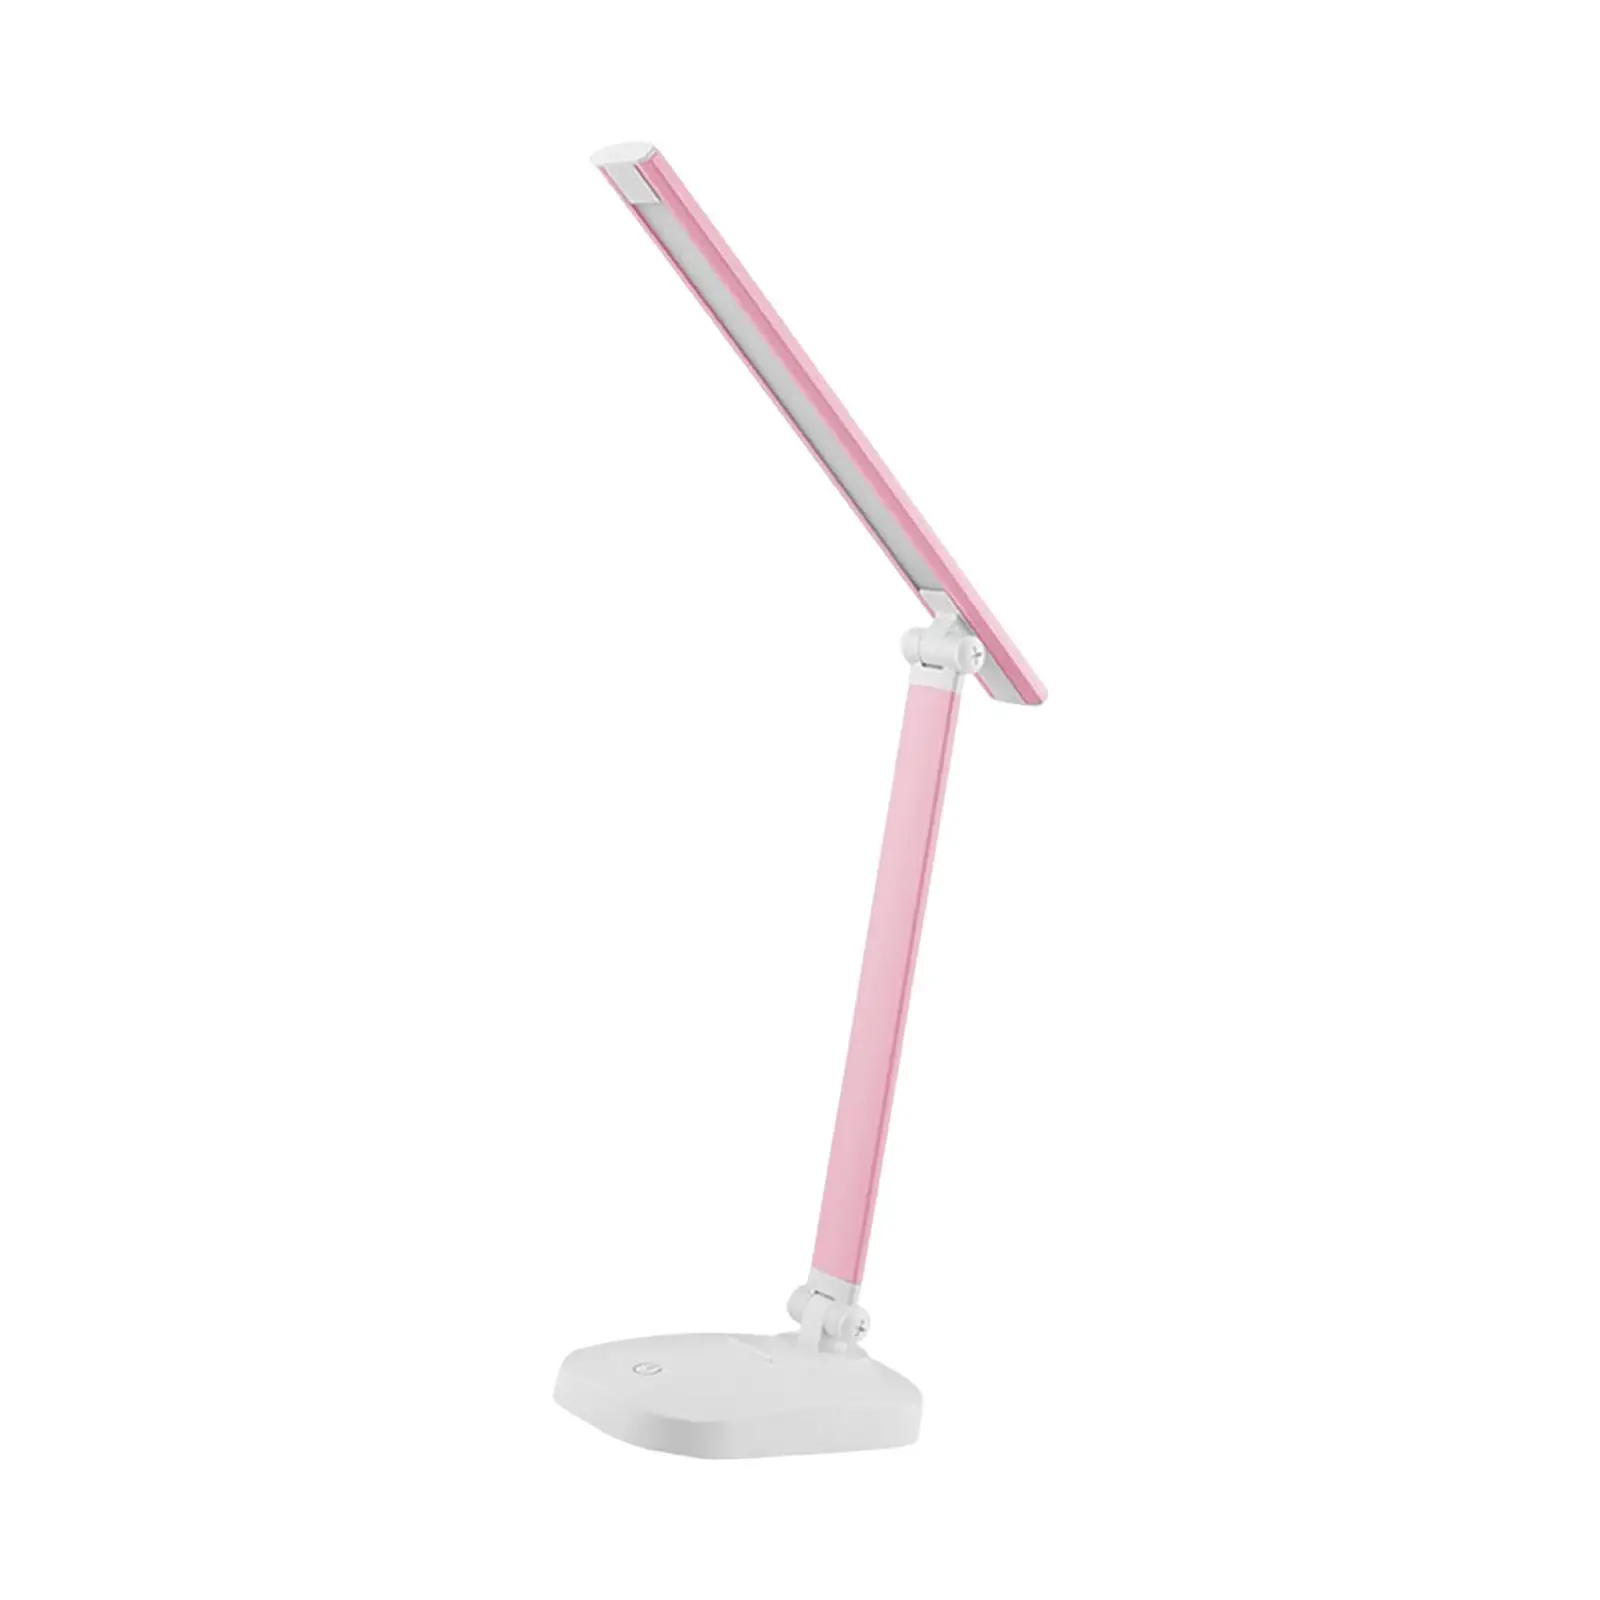 LED Desk Lamp USB with Adjustable Arm Desk Light for Bedside Study Bedroom